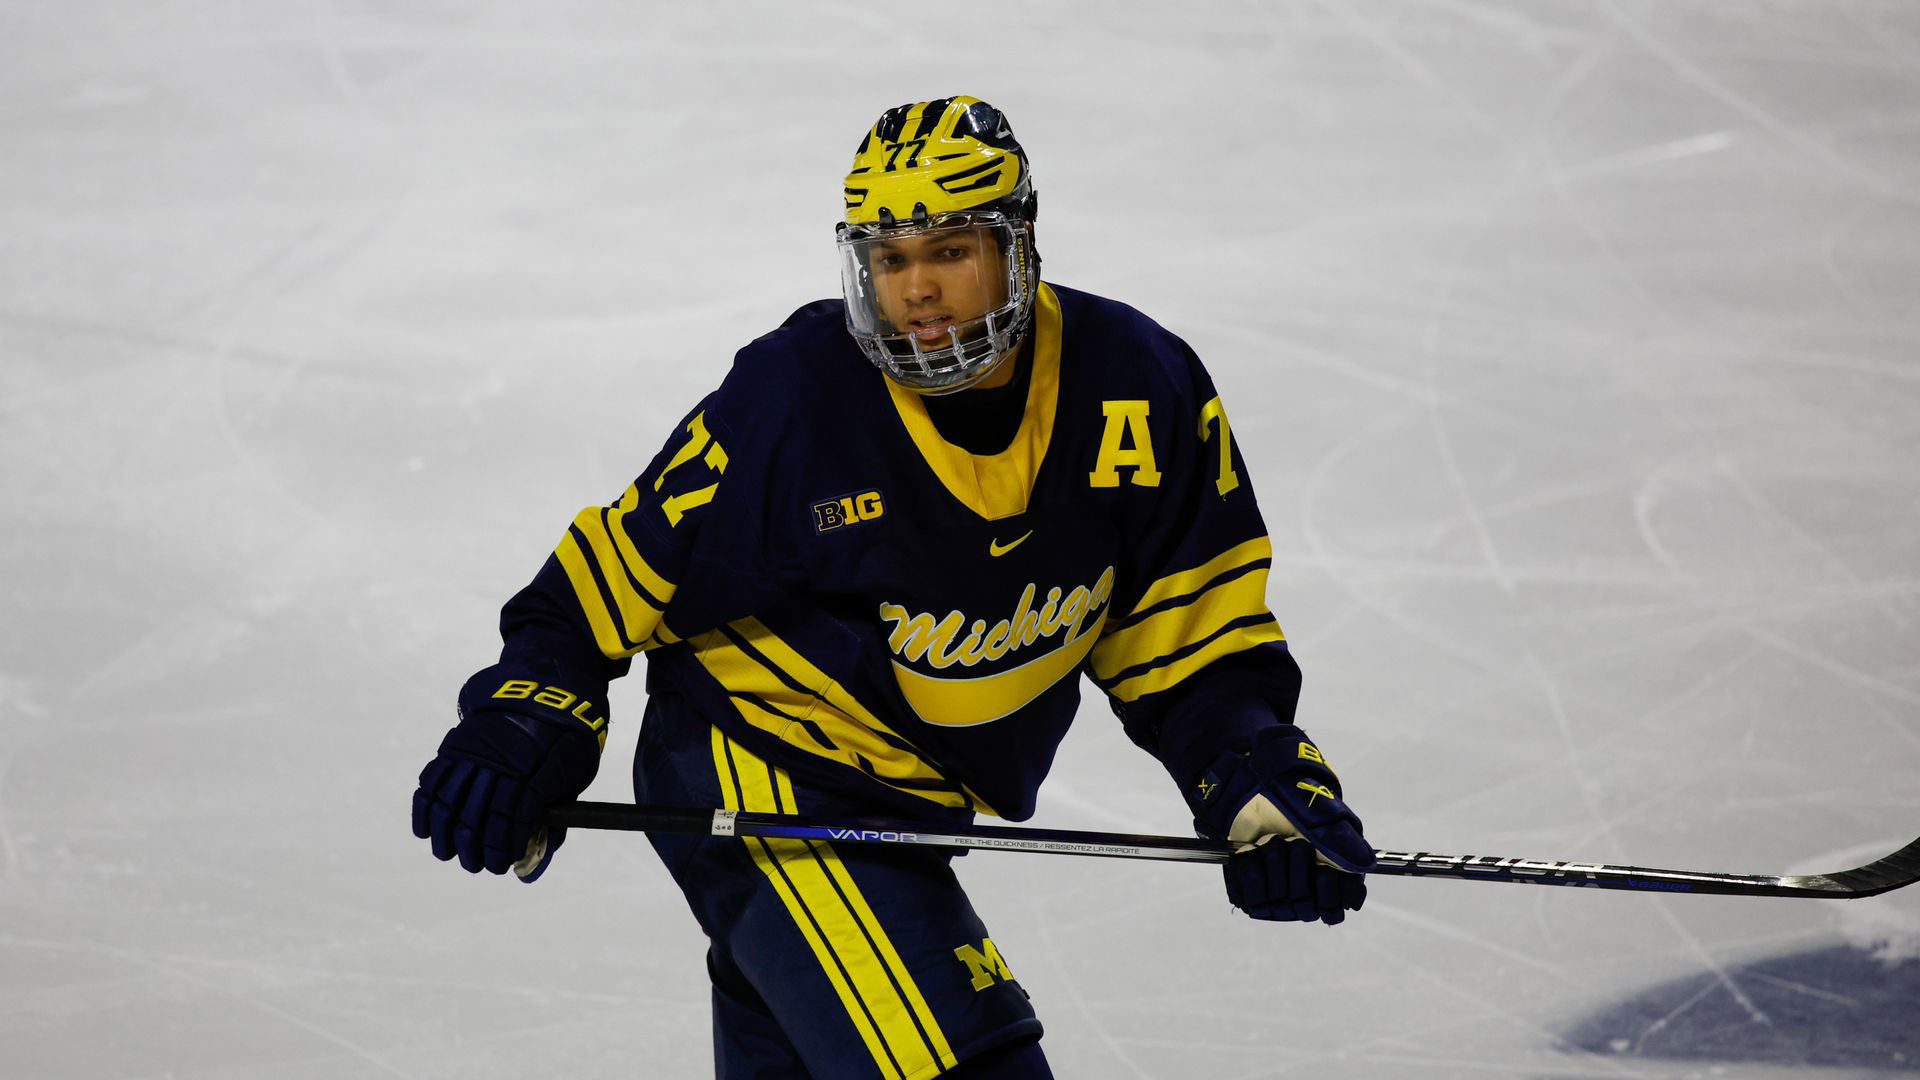 Frozen Four Preview: #1 Boston College Men’s Hockey vs #10 Michigan